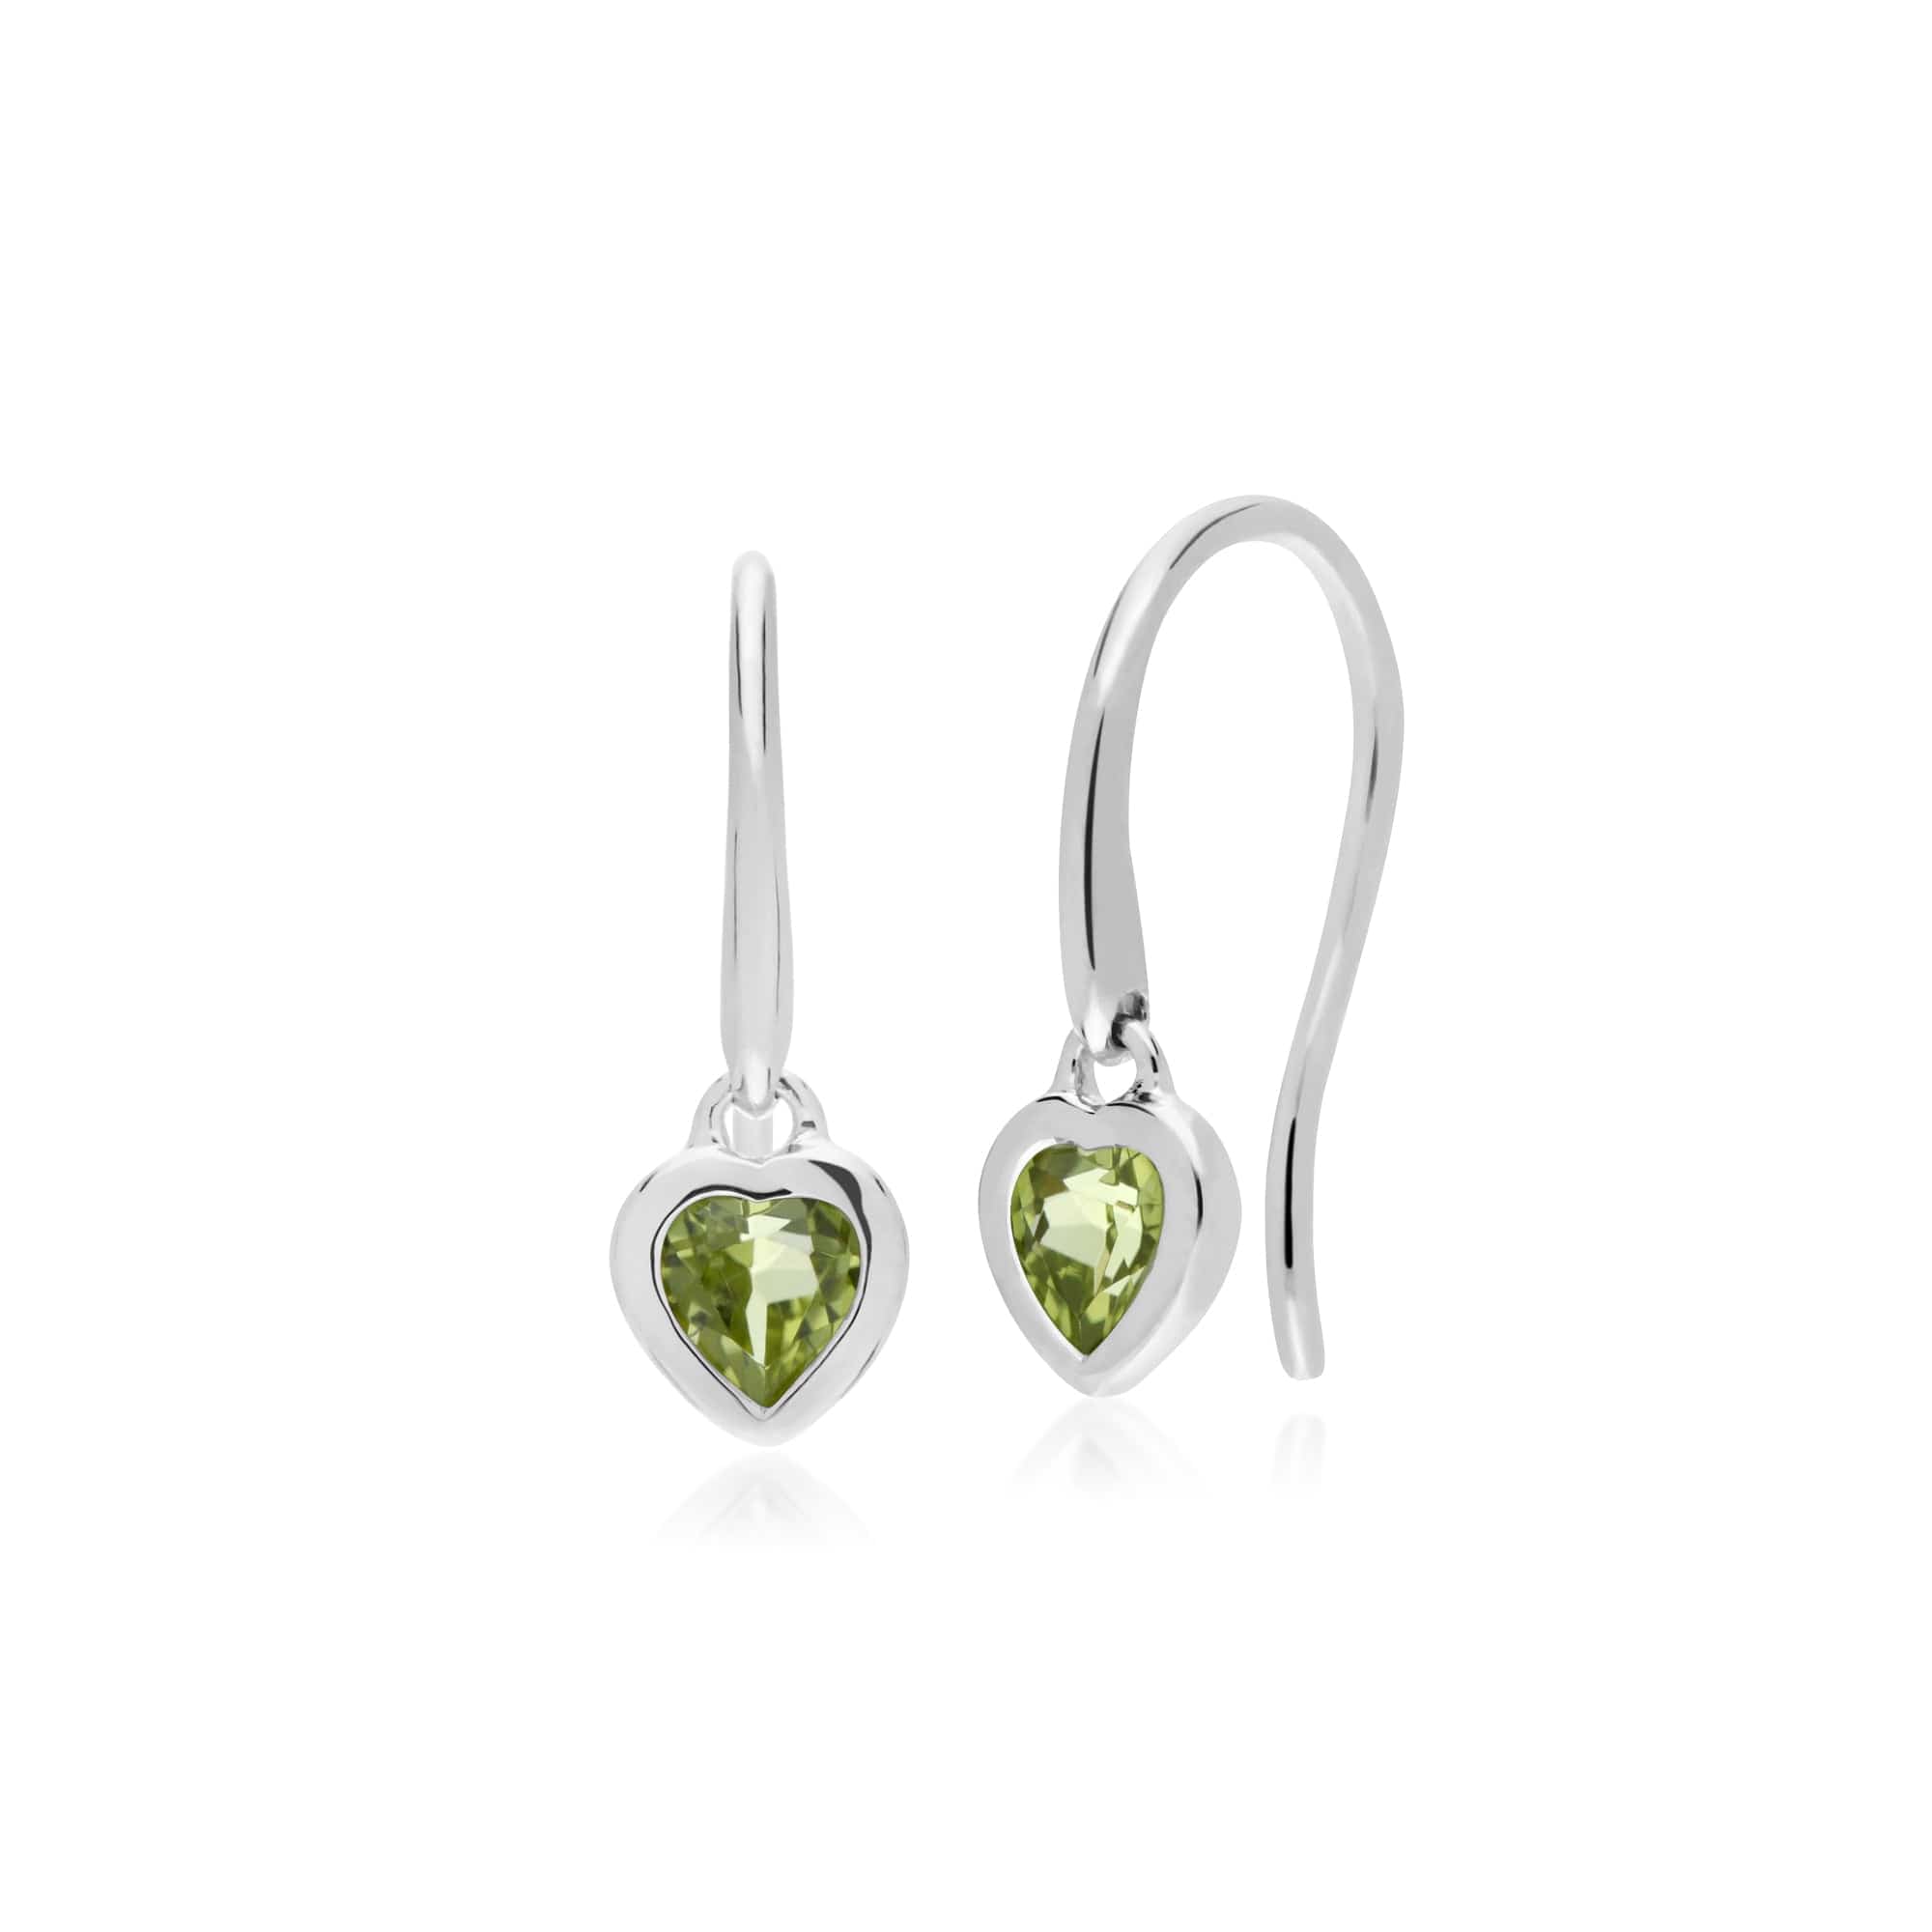 Essential Heart Shaped Peridot Drop Earrings in 925 Sterling Silver - Gemondo